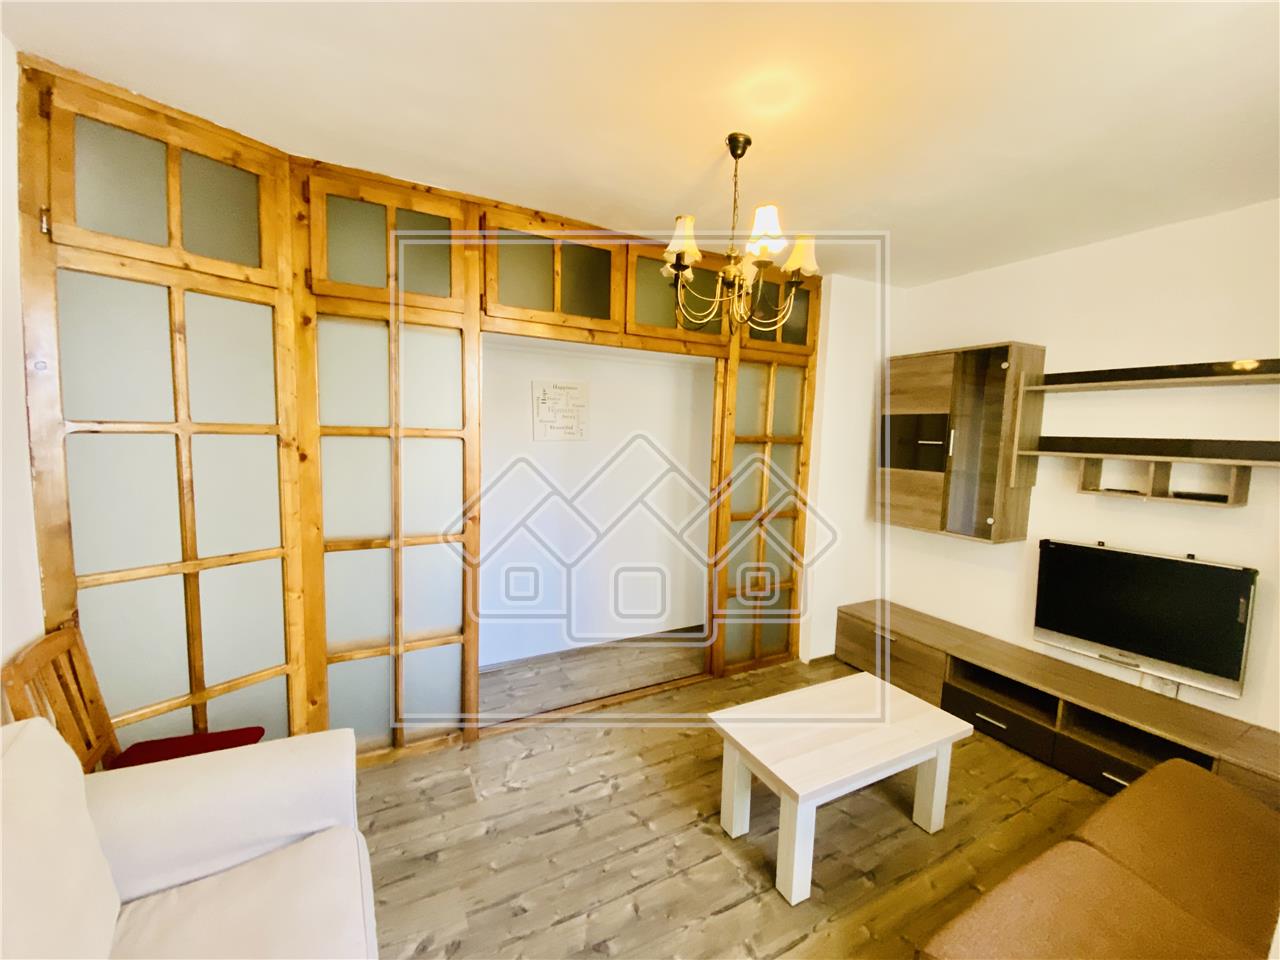 Apartament de vanzare in Sibiu - 3 camere si balcon - Zona Cedonia